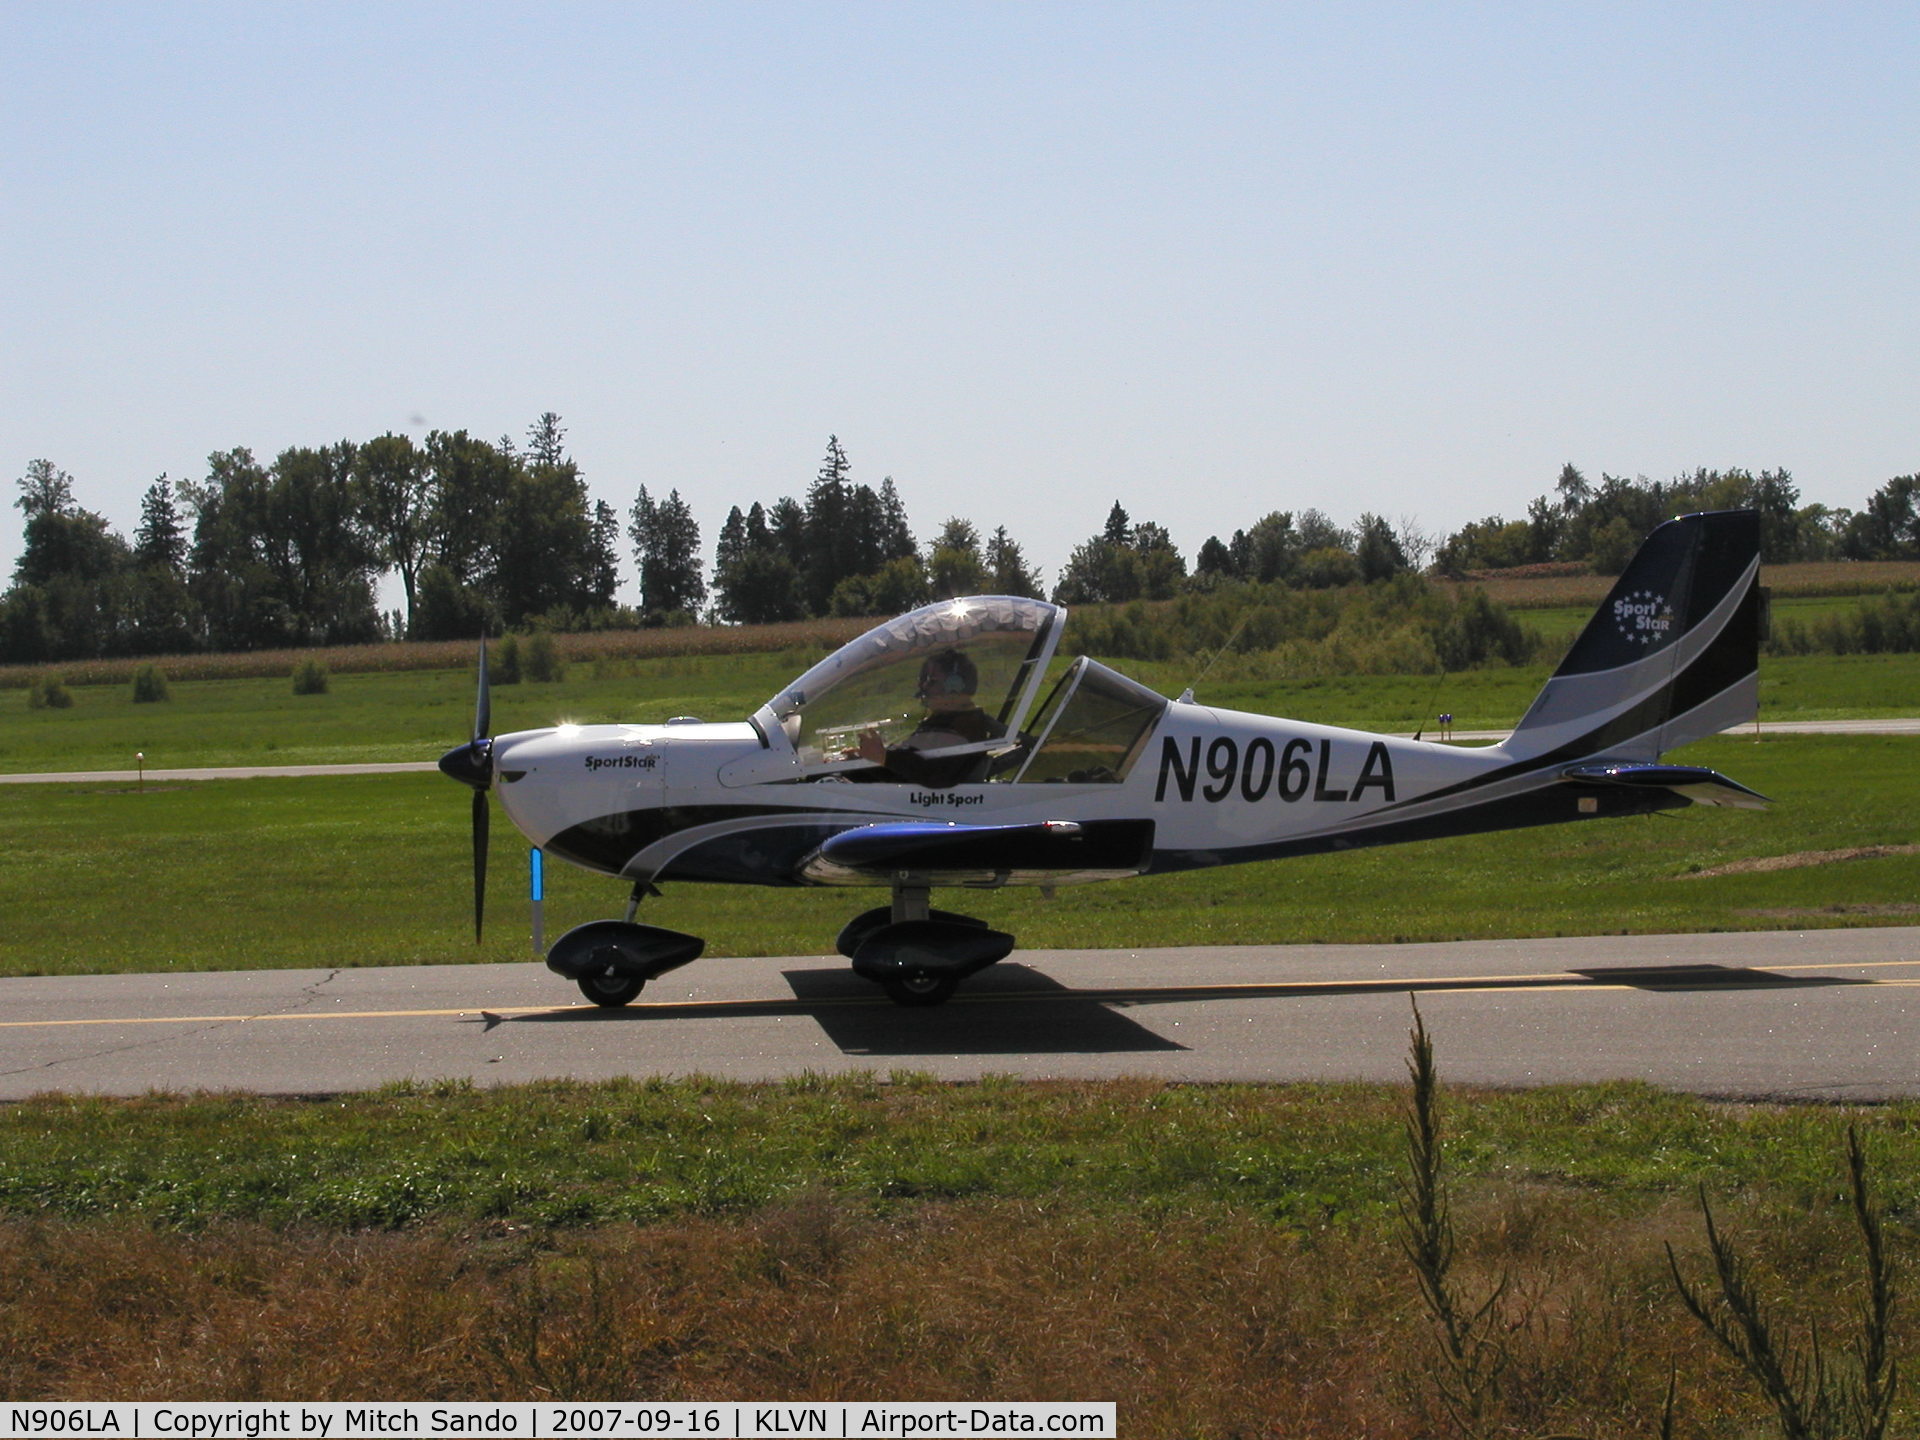 N906LA, 2007 Evektor-Aerotechnik Sportstar Plus C/N 20070906, Taxiing to the tie-downs.